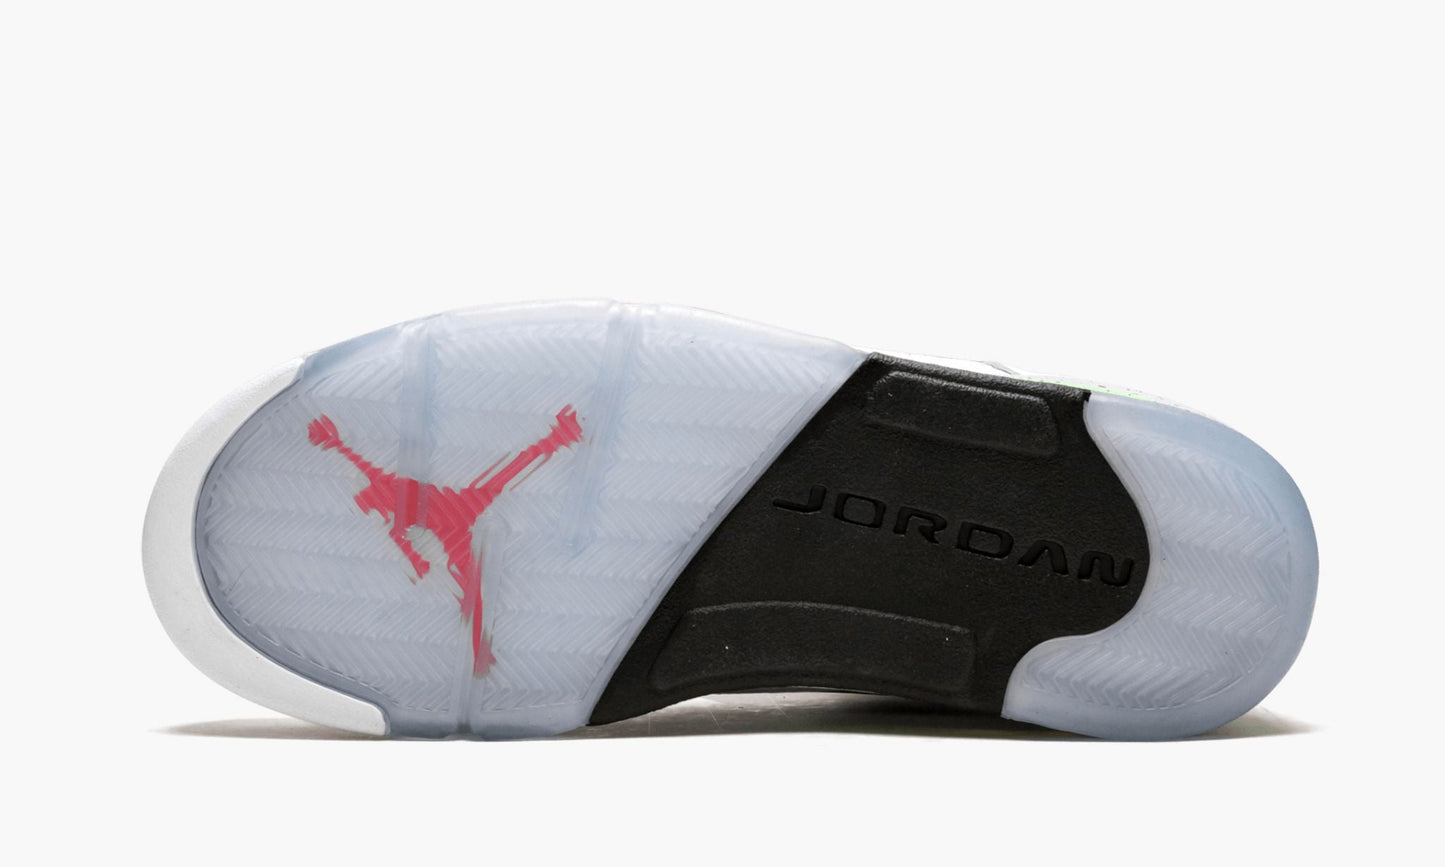 Air Jordan 5 Retro "Pro Star"